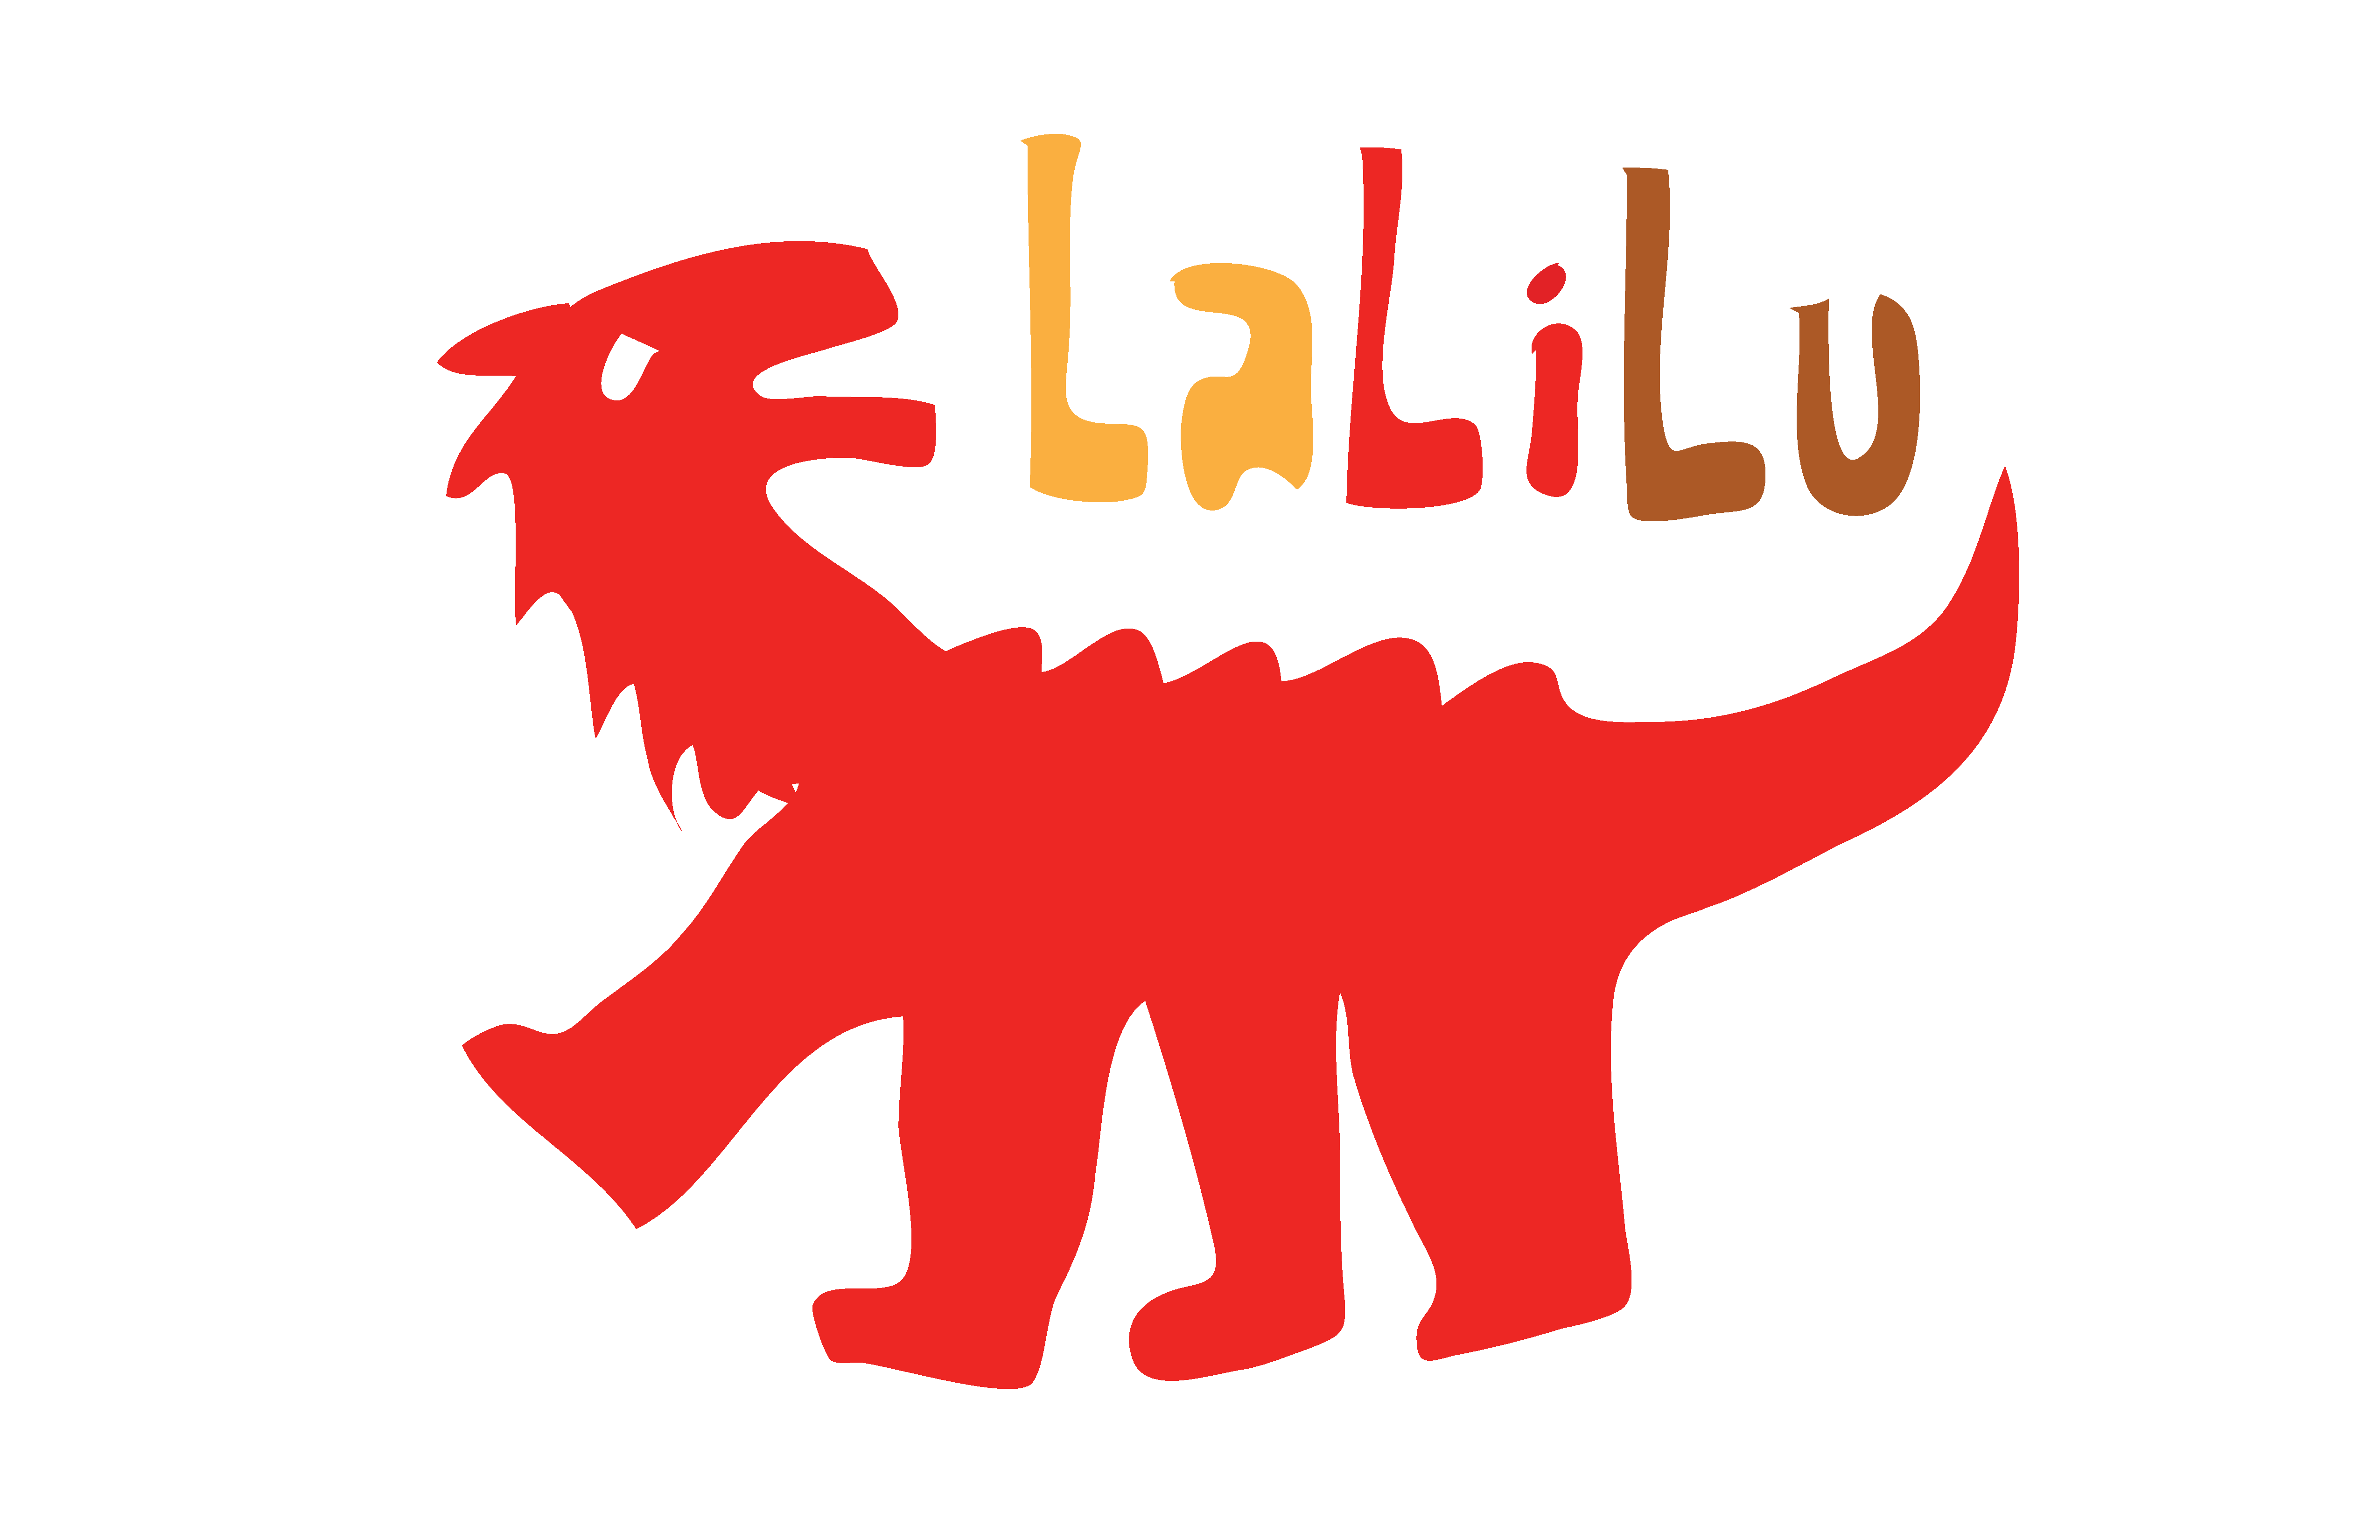 LaLiLu